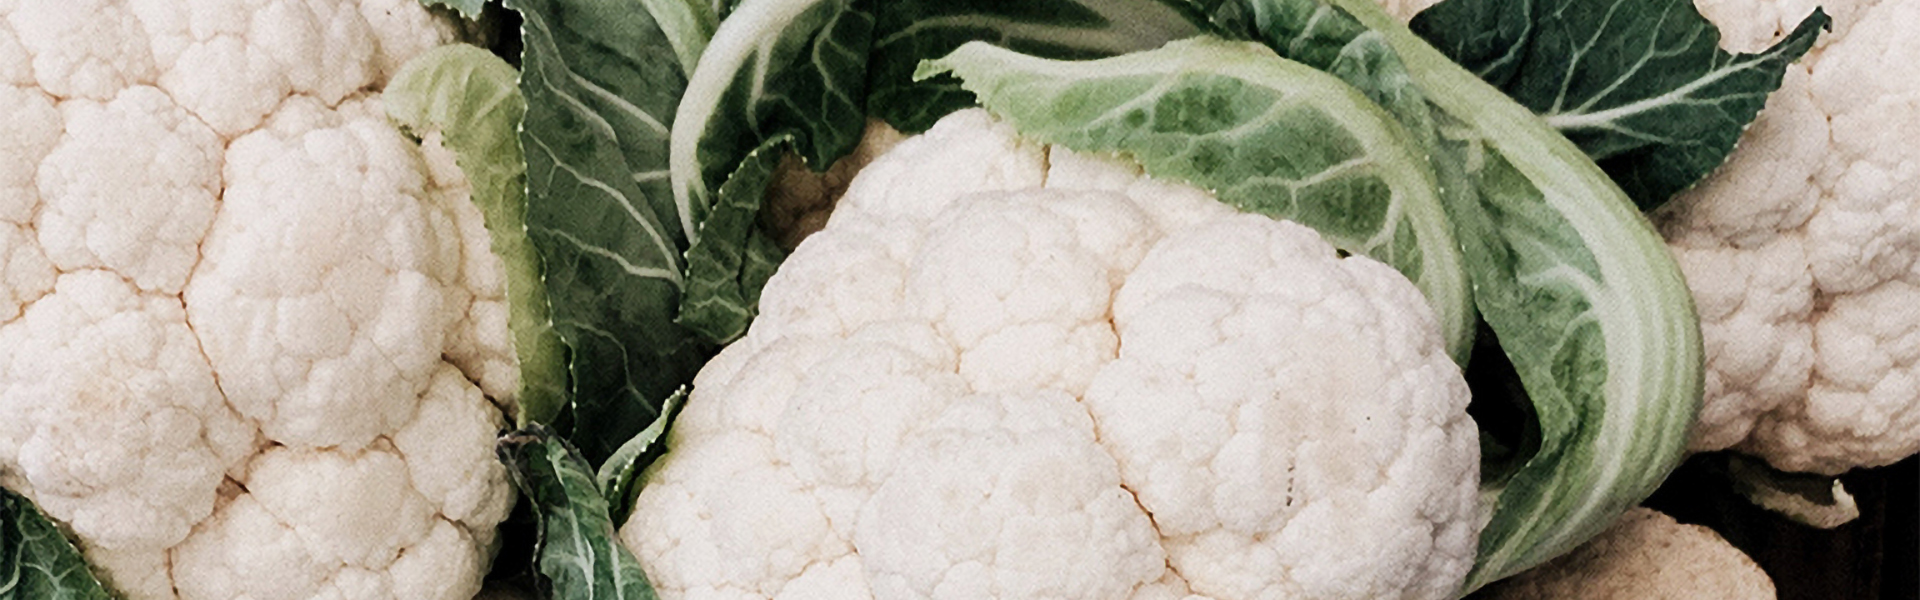 Know Your Food: Cauliflower